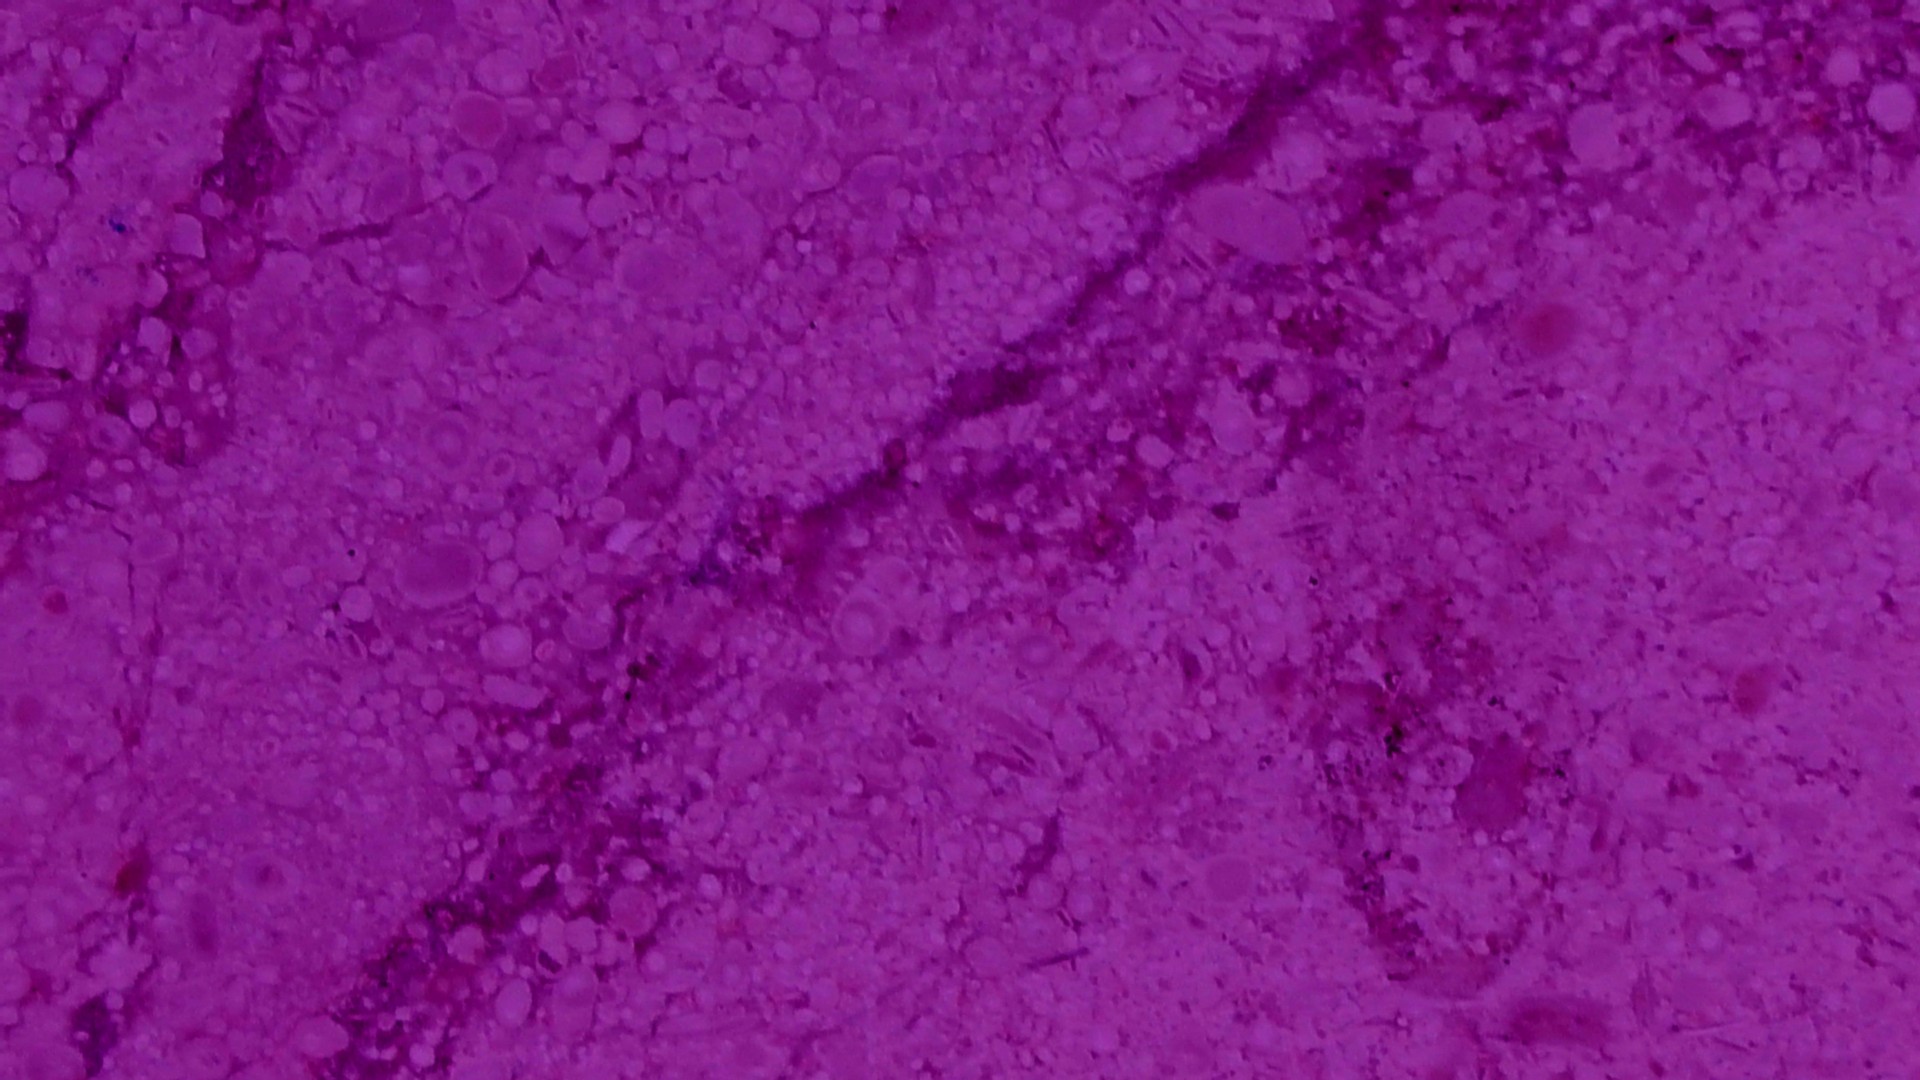 紫色の大理石のテクスチャ背景 無料画像 Public Domain Pictures